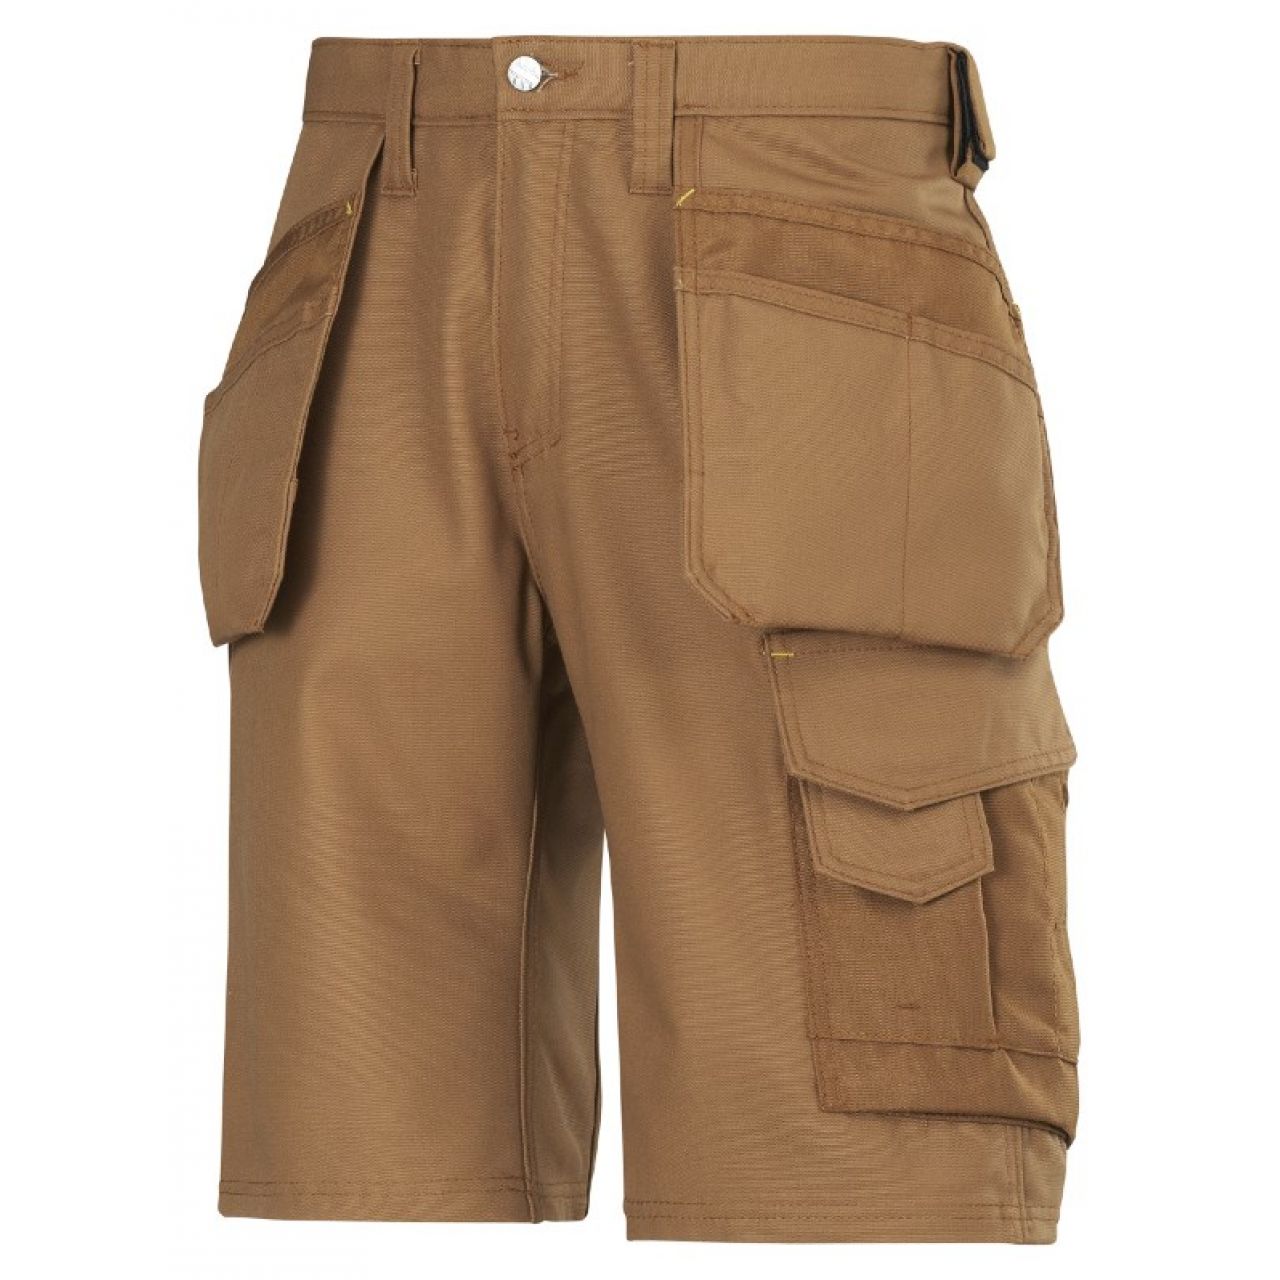 3014 Pantalones cortos de trabajo con bolsillos flotantes Canvas+ marron talla 50